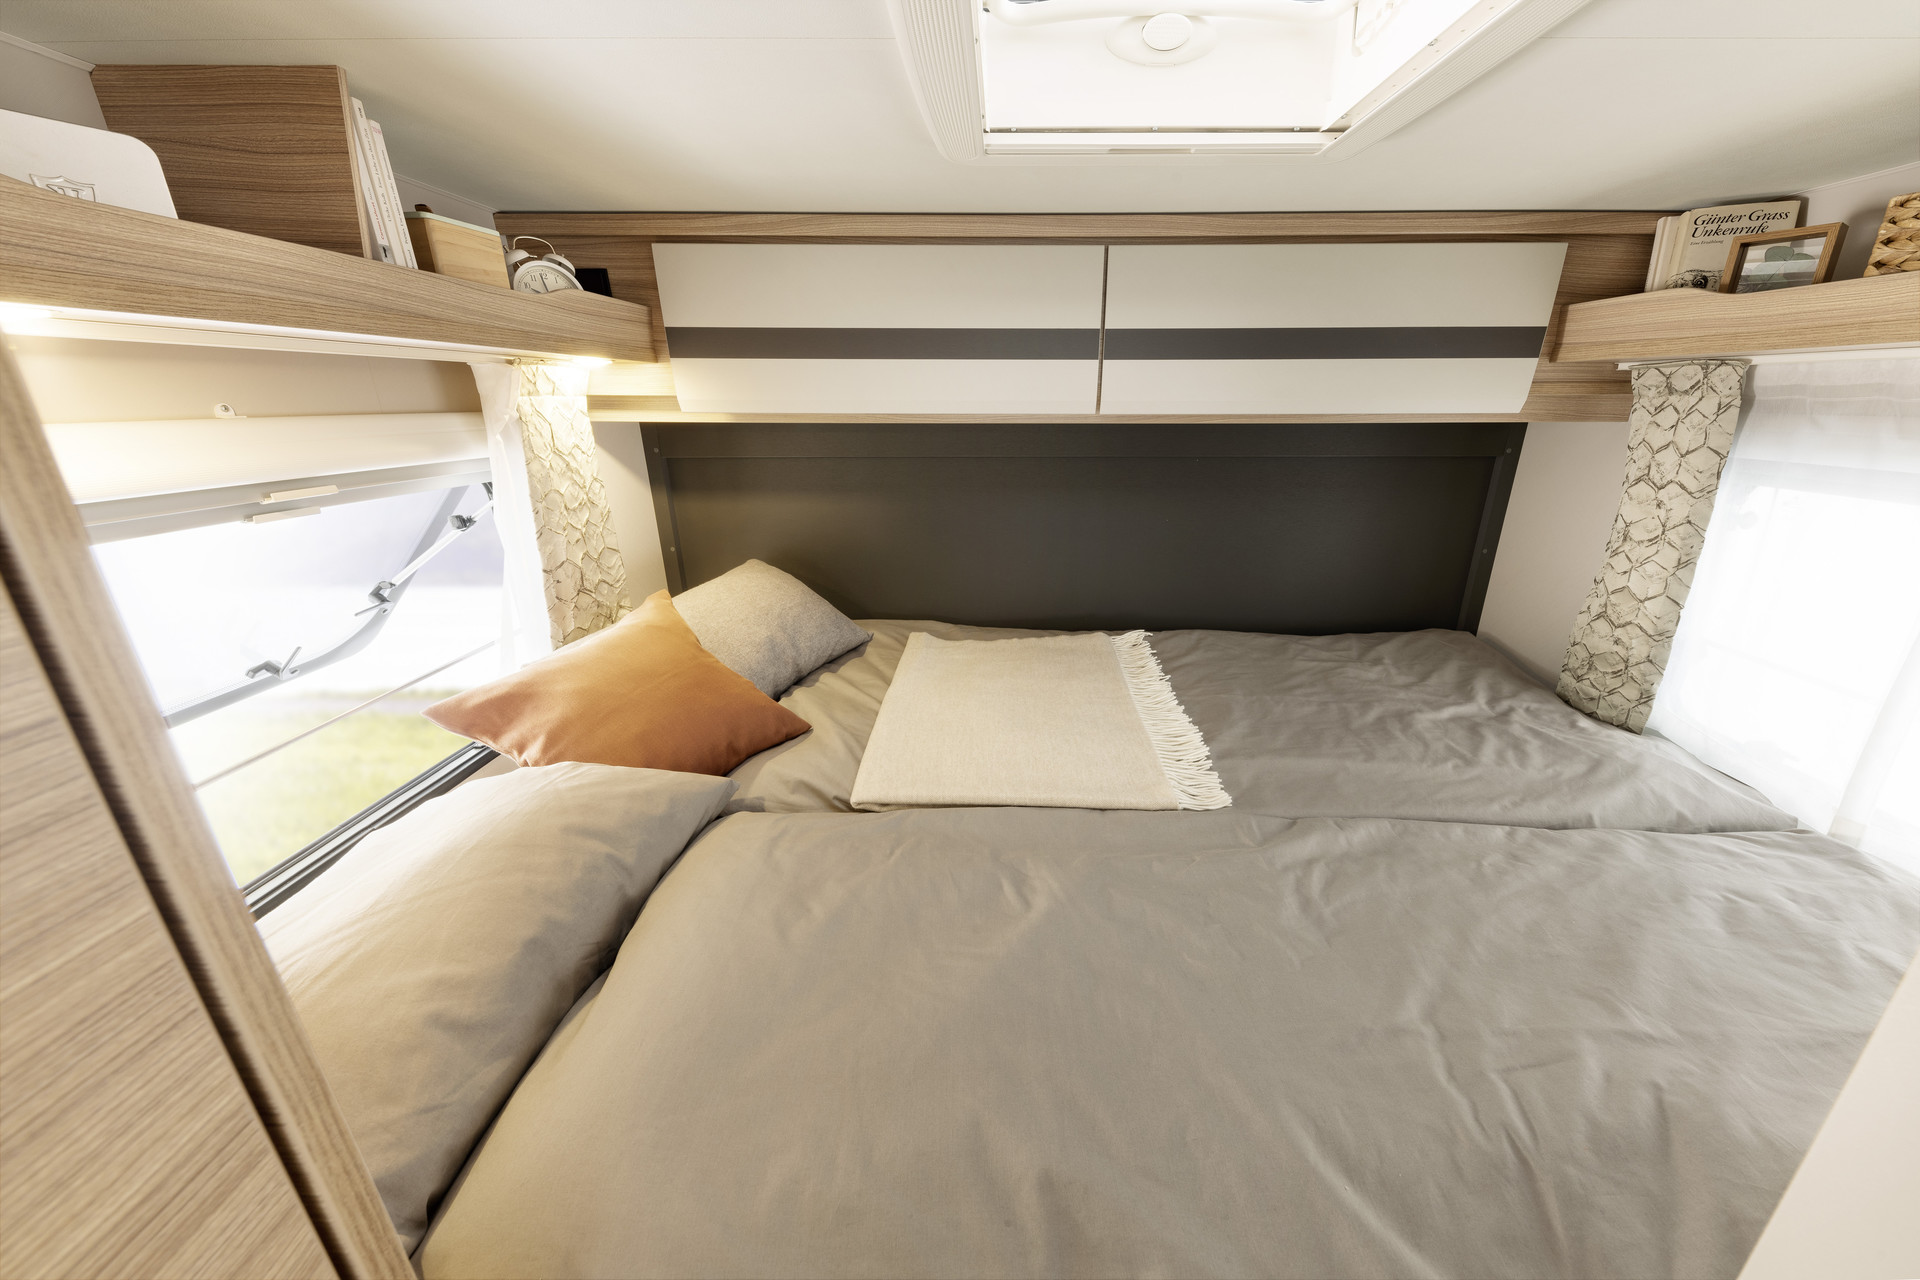 Umieszczone poprzecznie łóżko podwójne rozpieszcza wymiarami 200 x 145 cm. Podobnie jak łóżka pojedyncze oferuje ono doskonały komfort snu dzięki materacowi 7-strefowemu o grubości 150 mm wykonanemu z materiału regulującego temperaturę • T / I 1